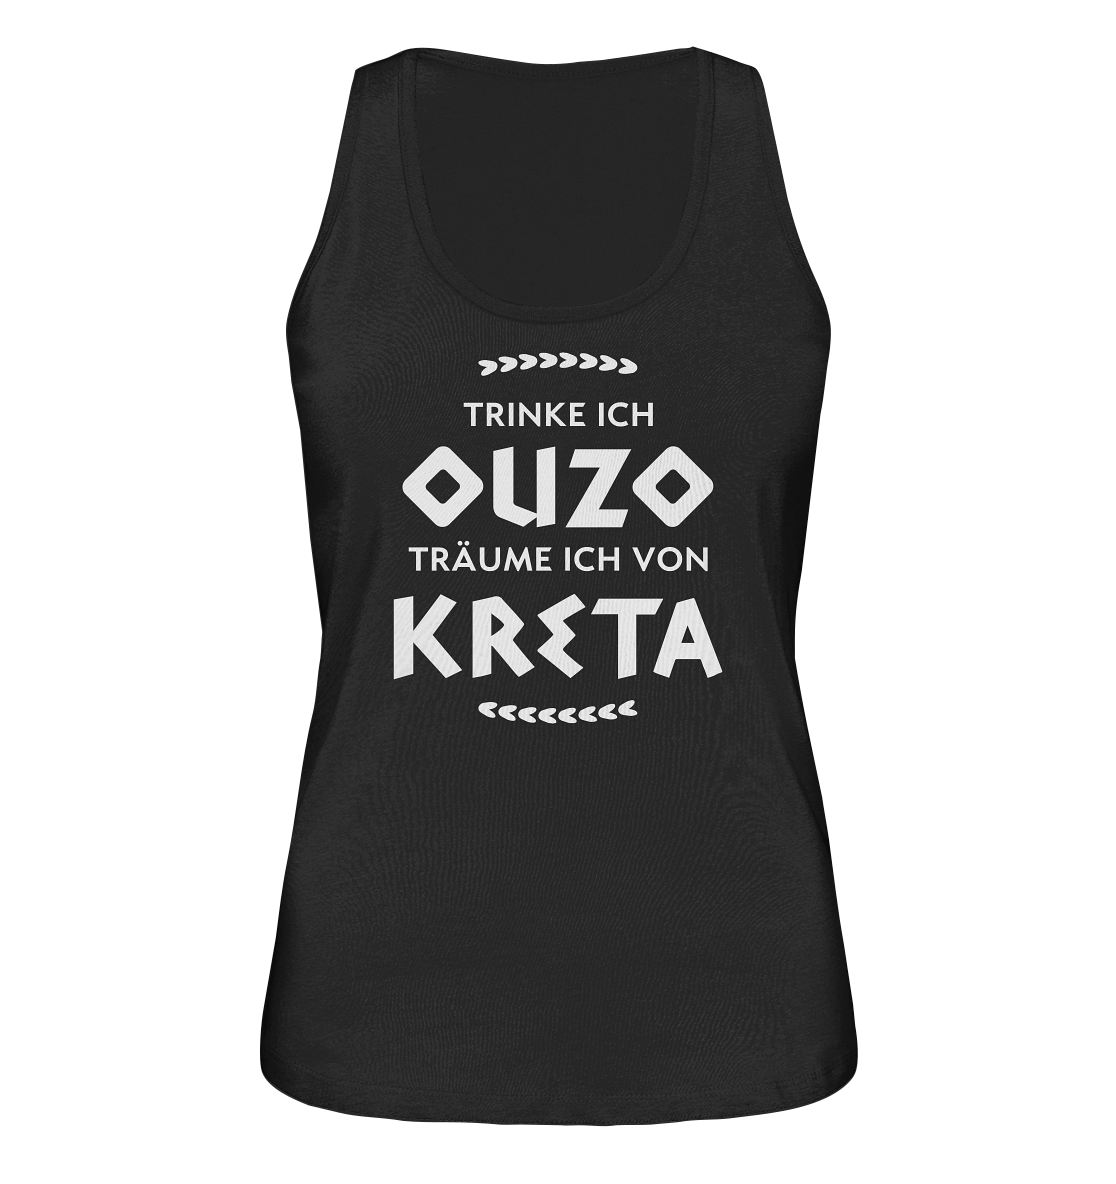 Trinke ich Ouzo träume ich von Kreta - Ladies Organic Tank-Top